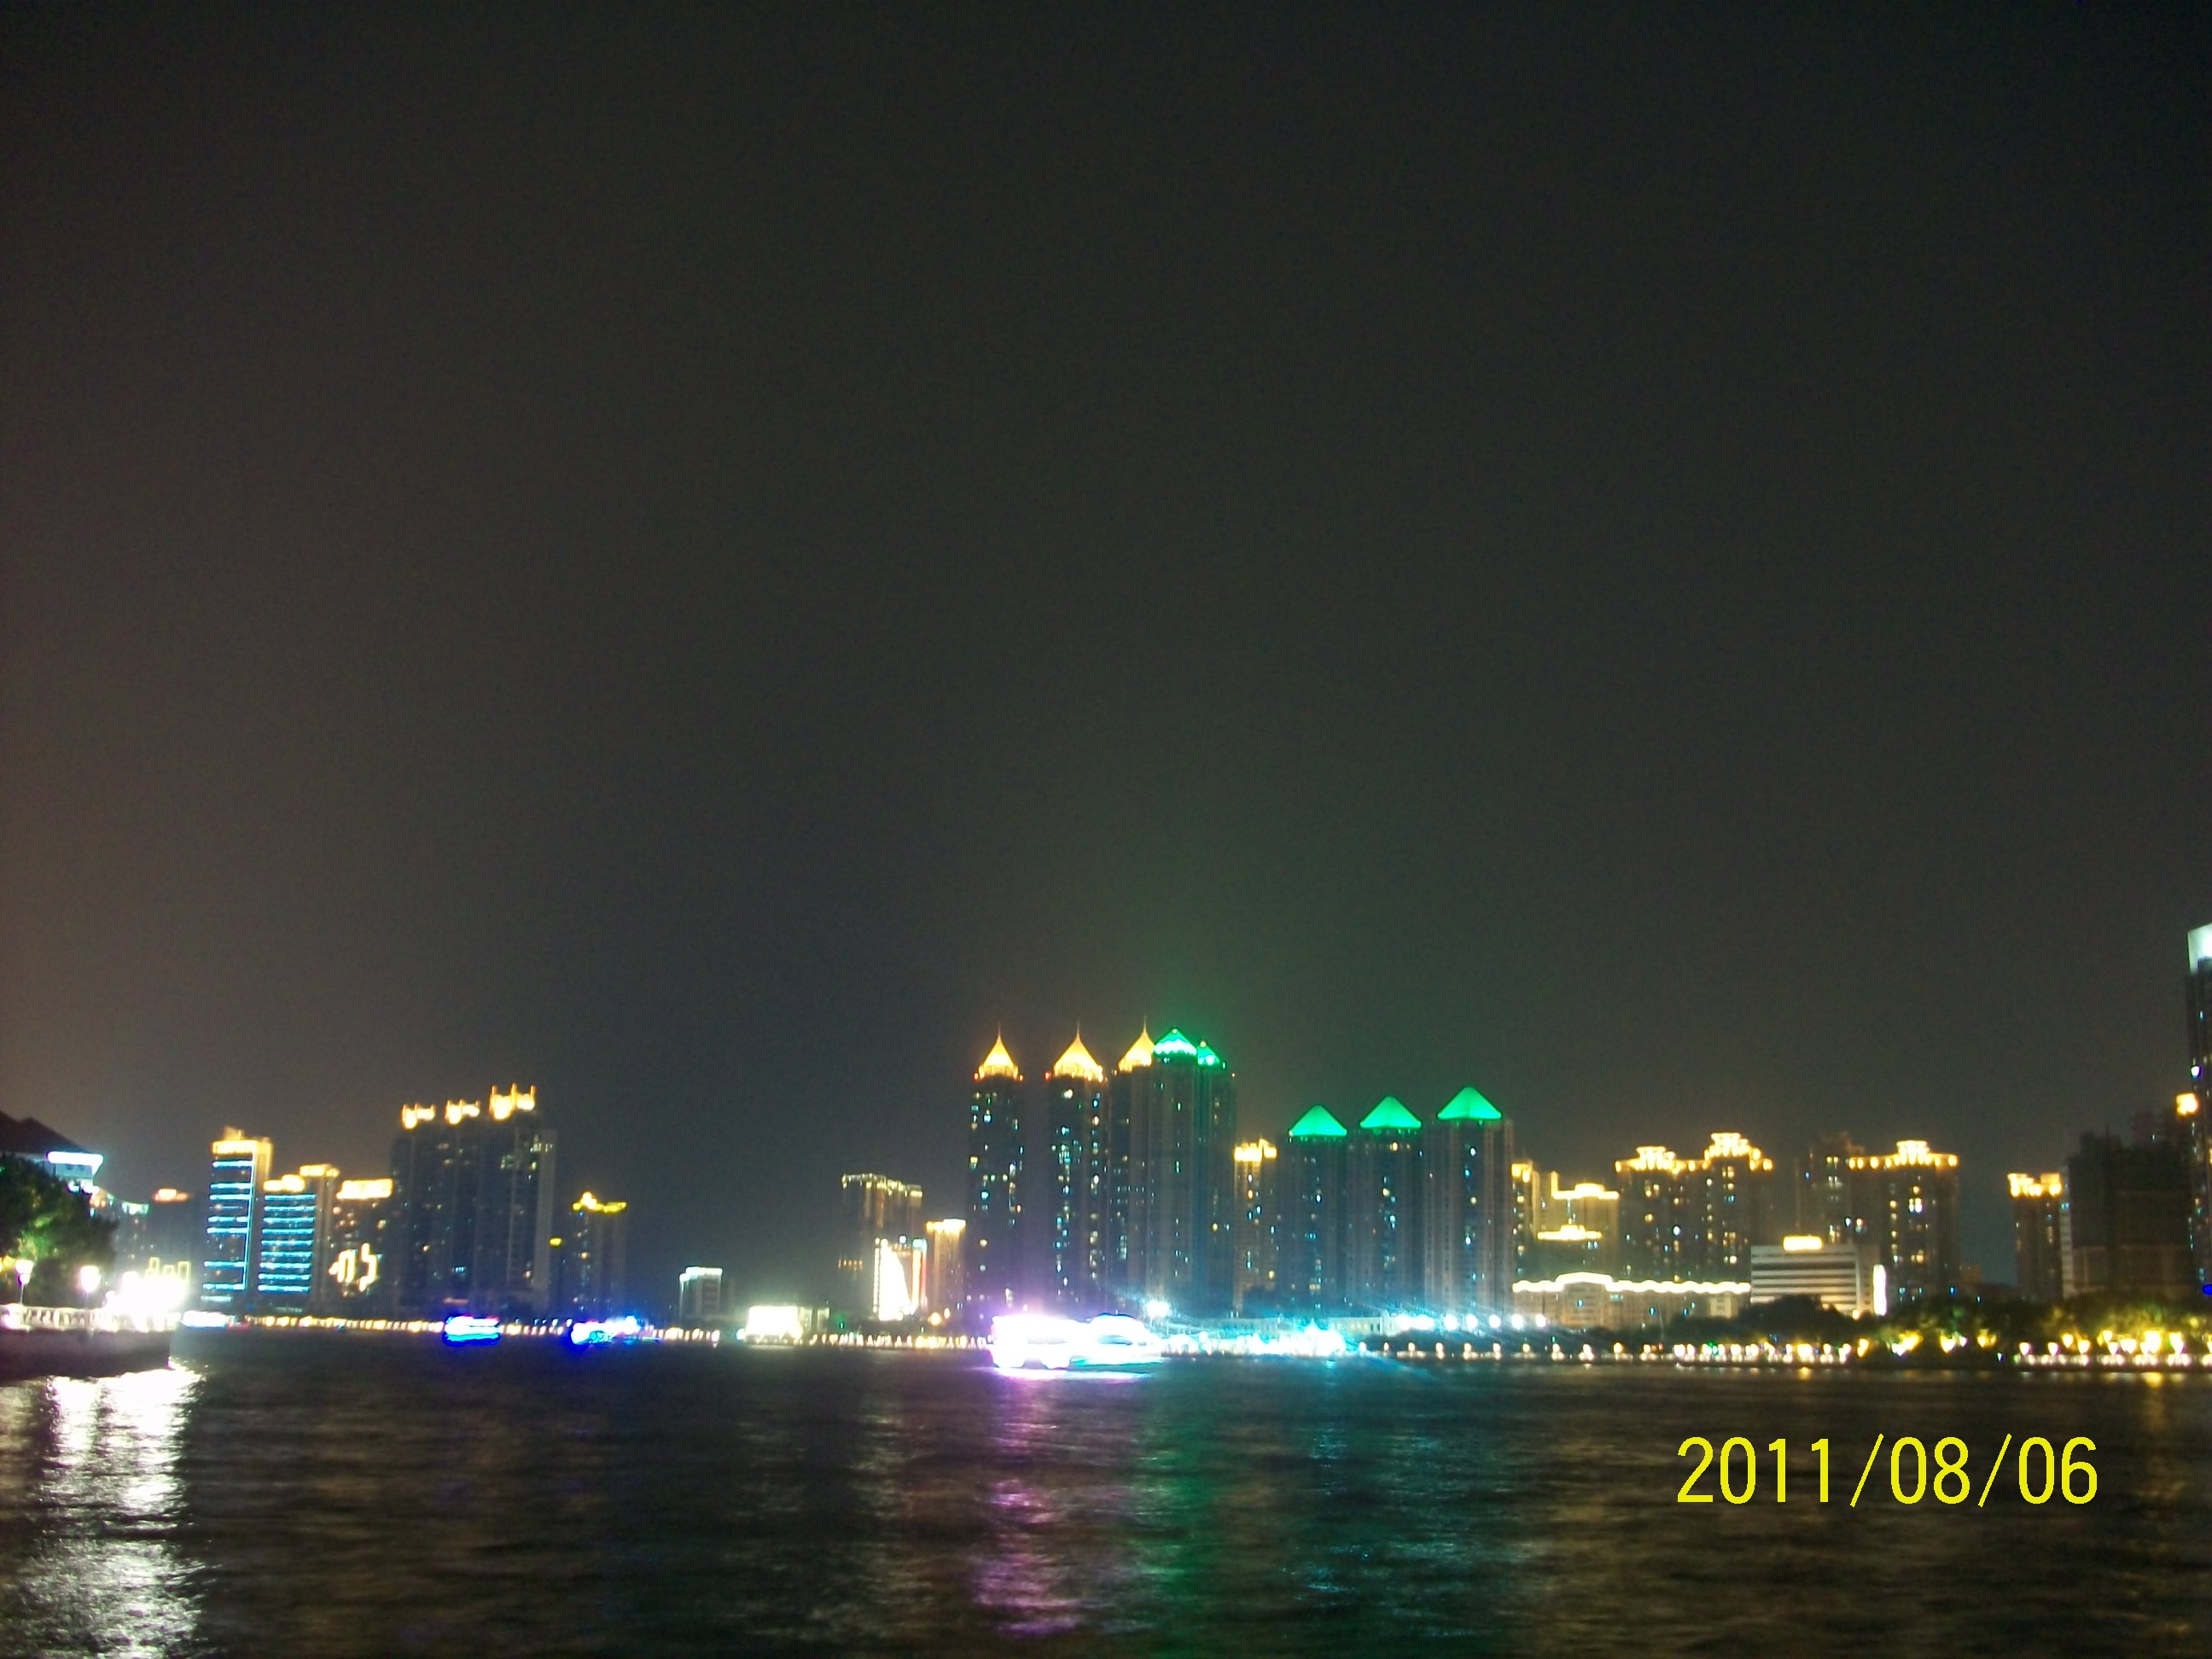 广州海印桥夜景451 / 作者:完美夏天 / 帖子ID:873